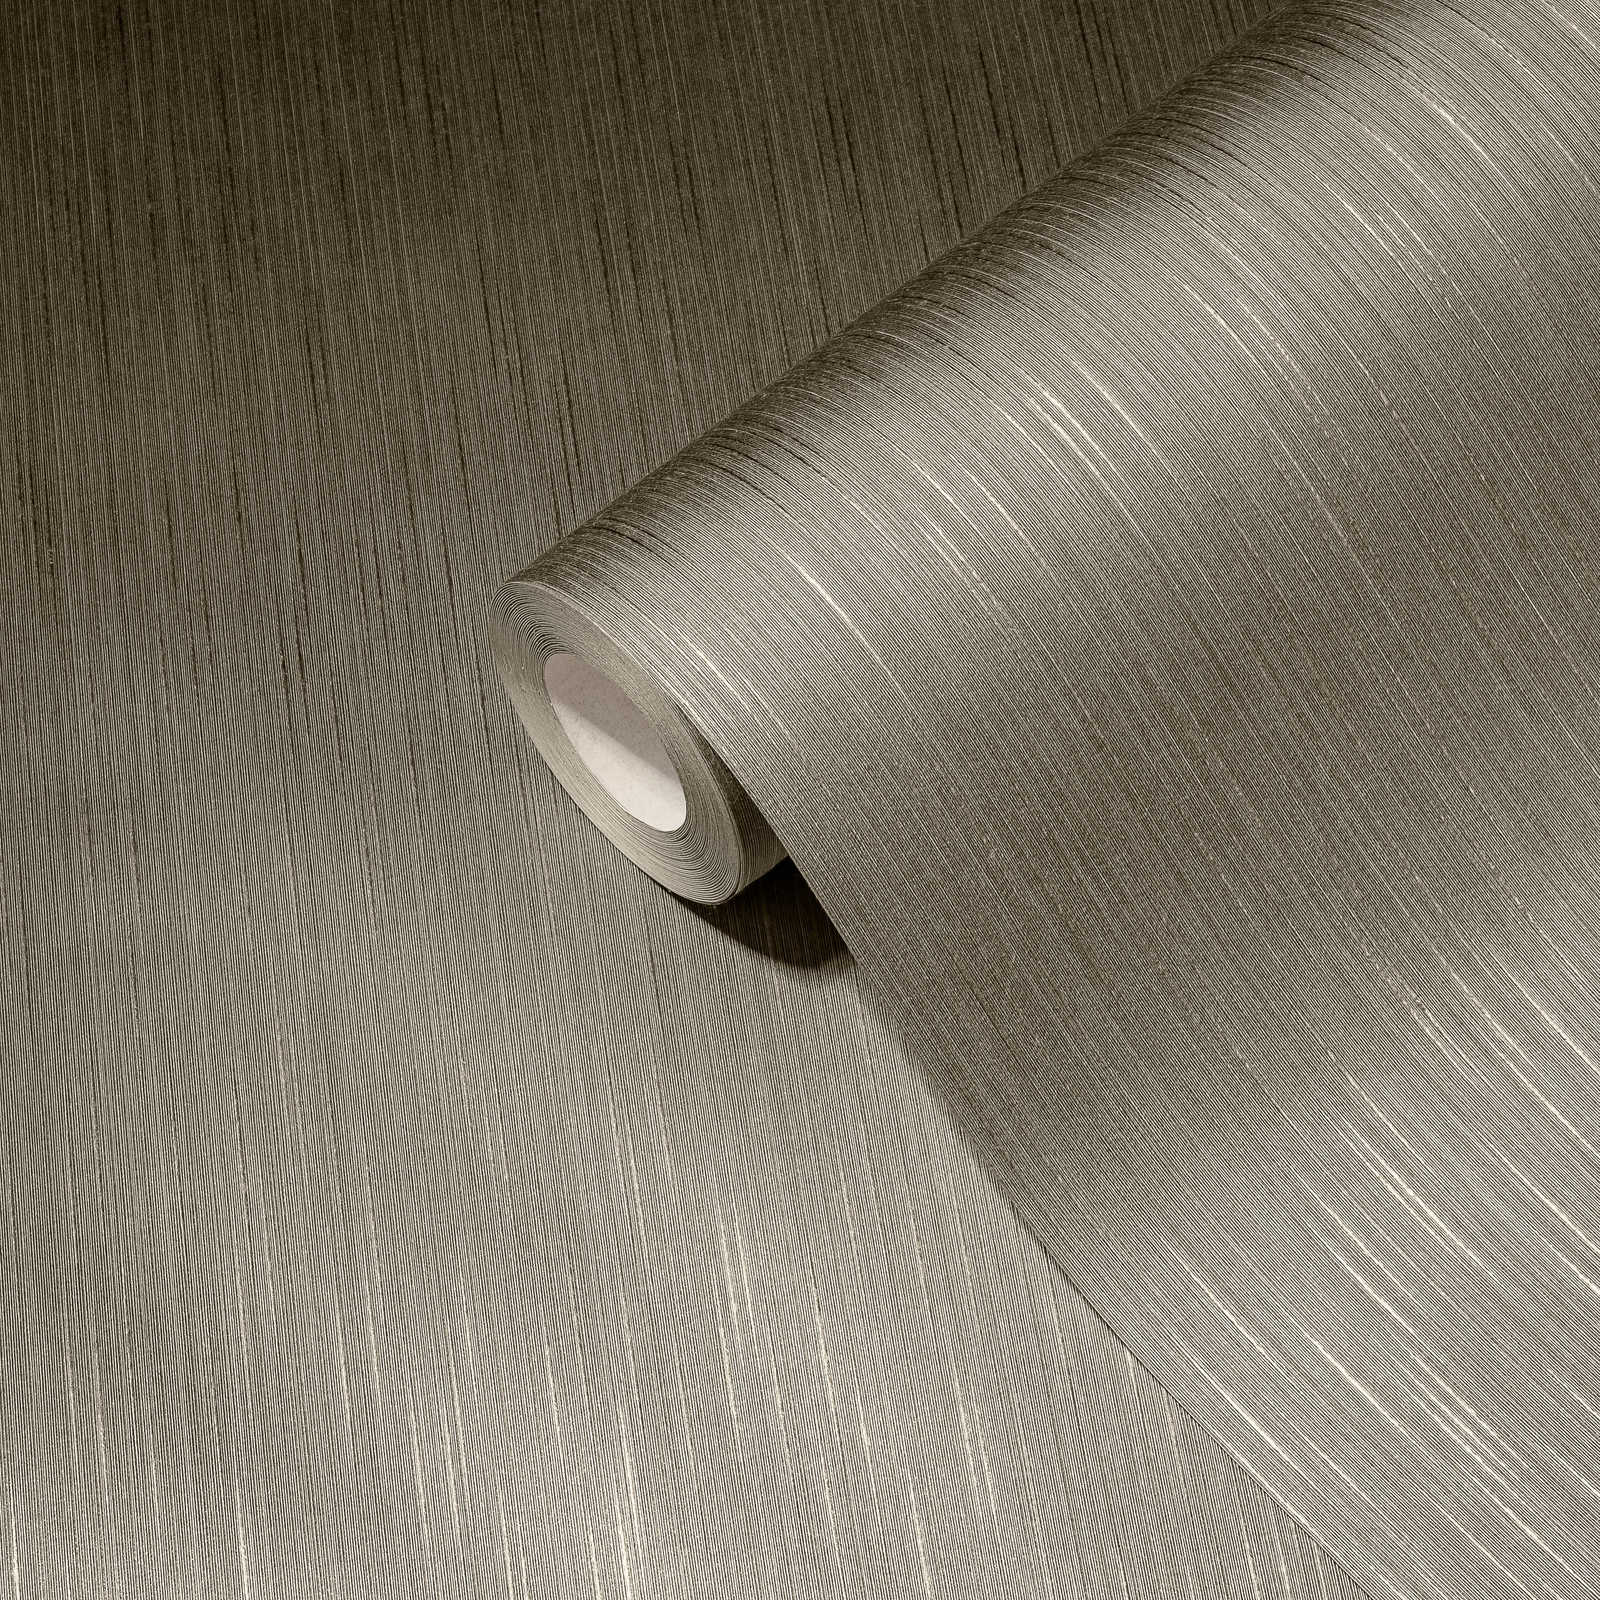             Textiel design behang grijsbruin met gevlekt patroon
        